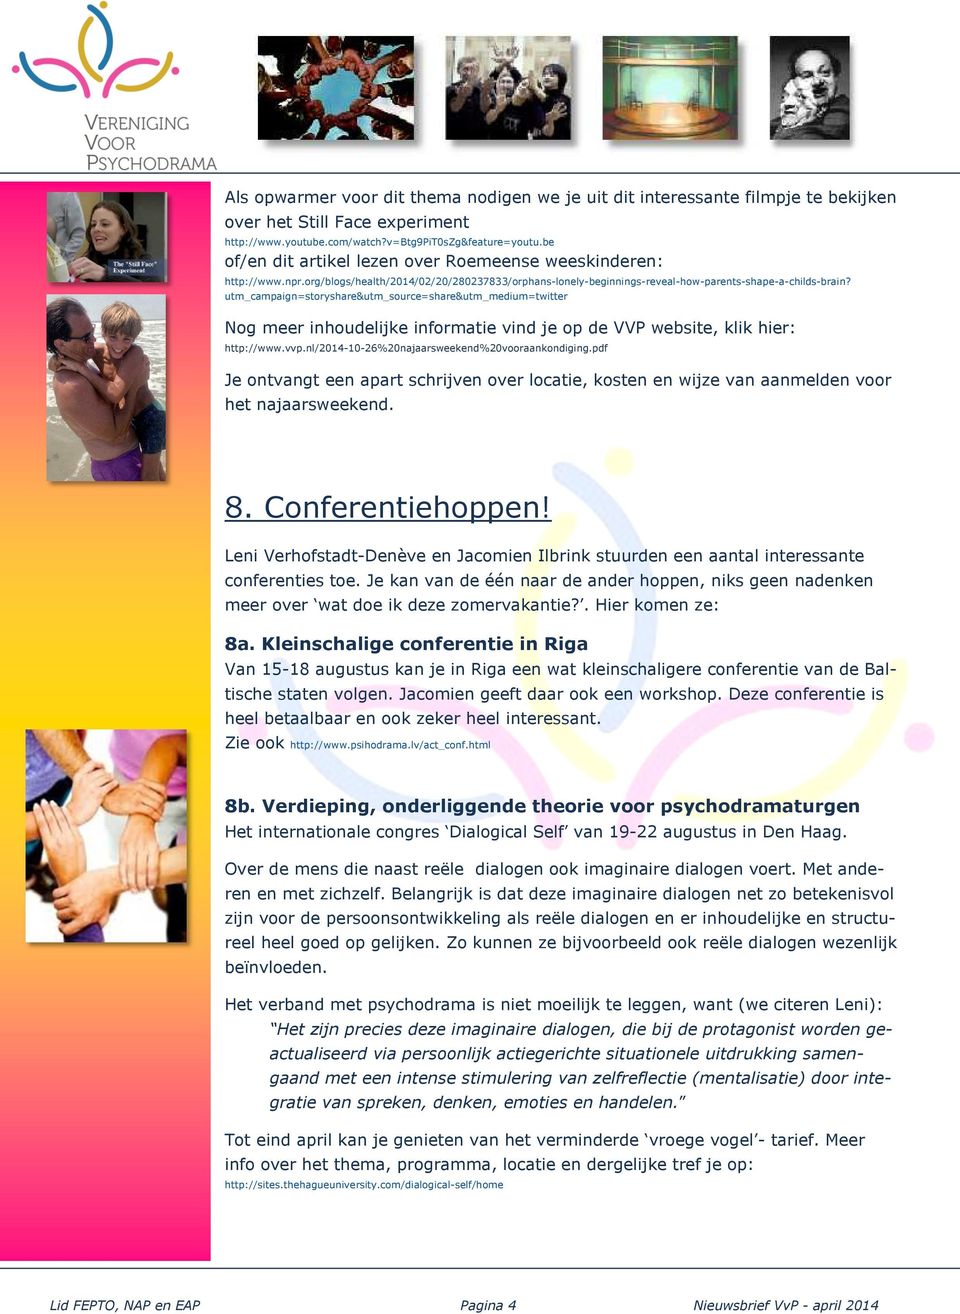 utm_campaign=storyshare&utm_source=share&utm_medium=twitter Nog meer inhoudelijke informatie vind je op de VVP website, klik hier: http://www.vvp.nl/2014-10-26%20najaarsweekend%20vooraankondiging.